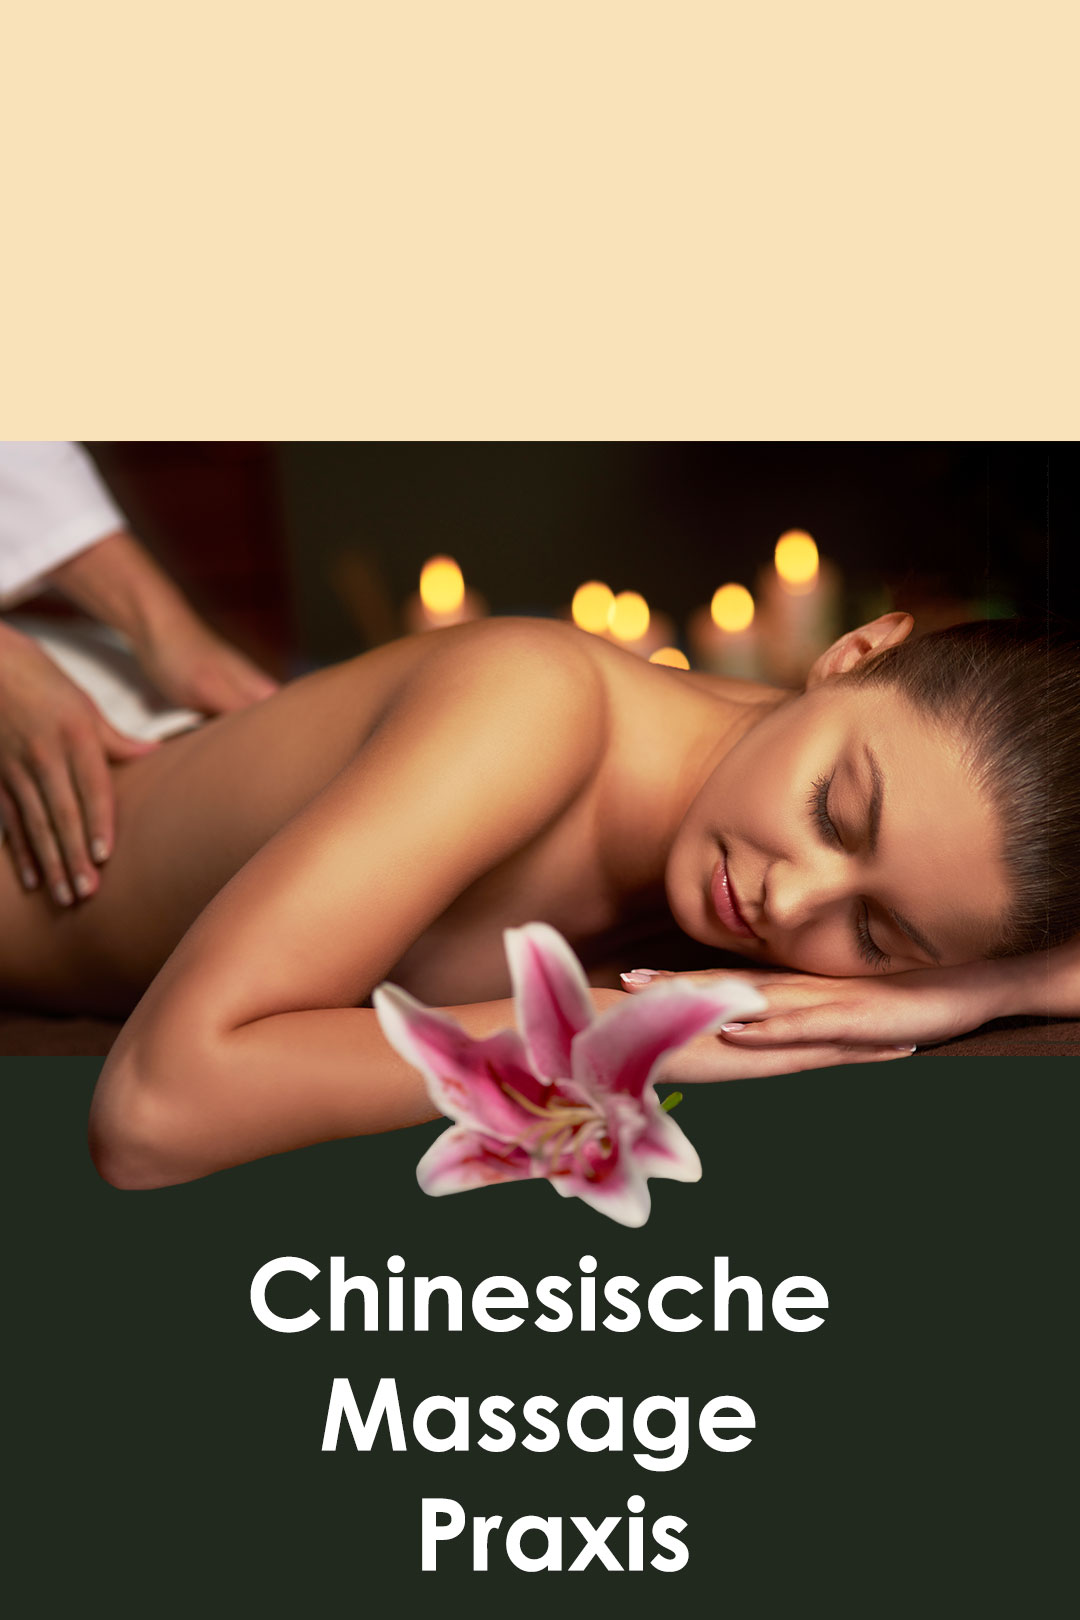 Chinesische massagen köln